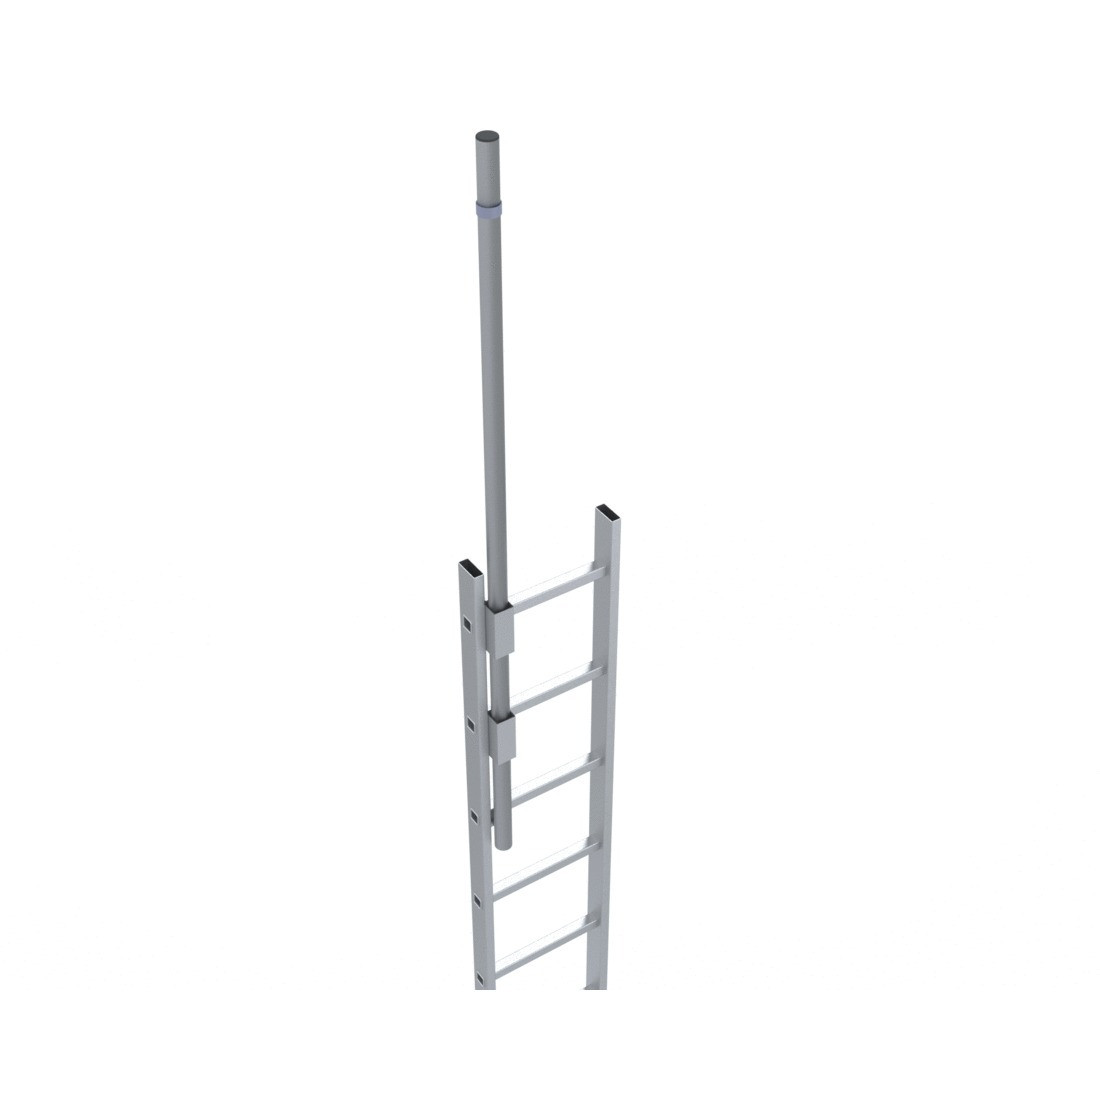 Escalera de protección dorsal - Crinolina altura 4500 con extensión de salida escamoteable